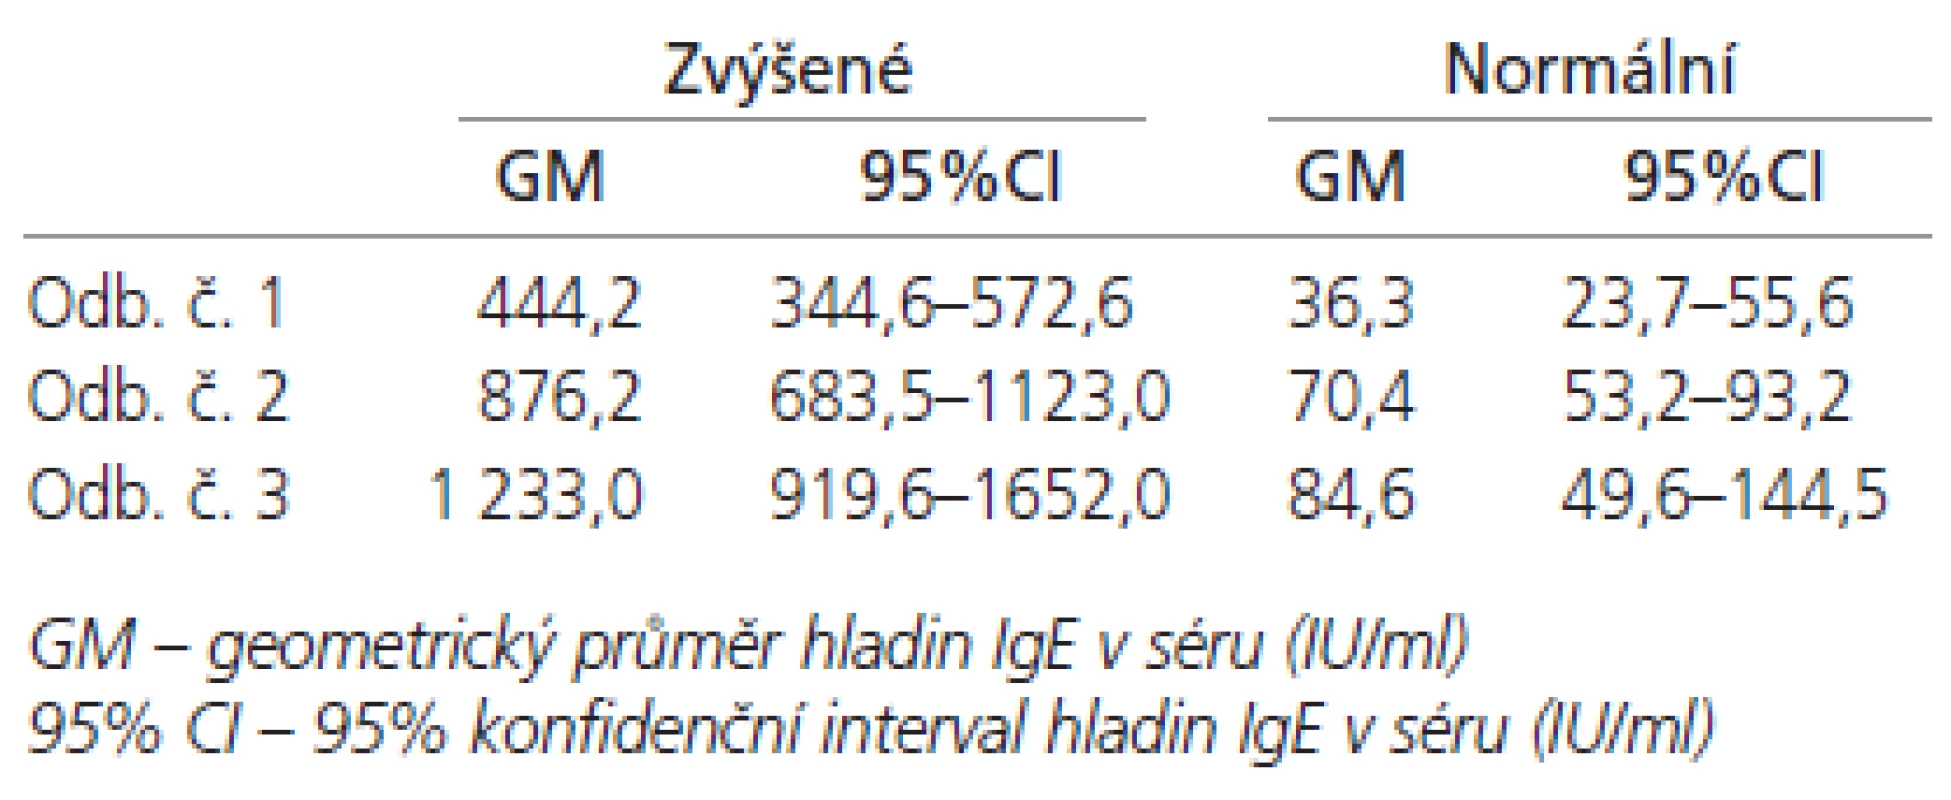 Průměrné hladiny IgE (IU/ml) v séru u pacientů se zvýšenou a normální hladinou při prvním odběru.